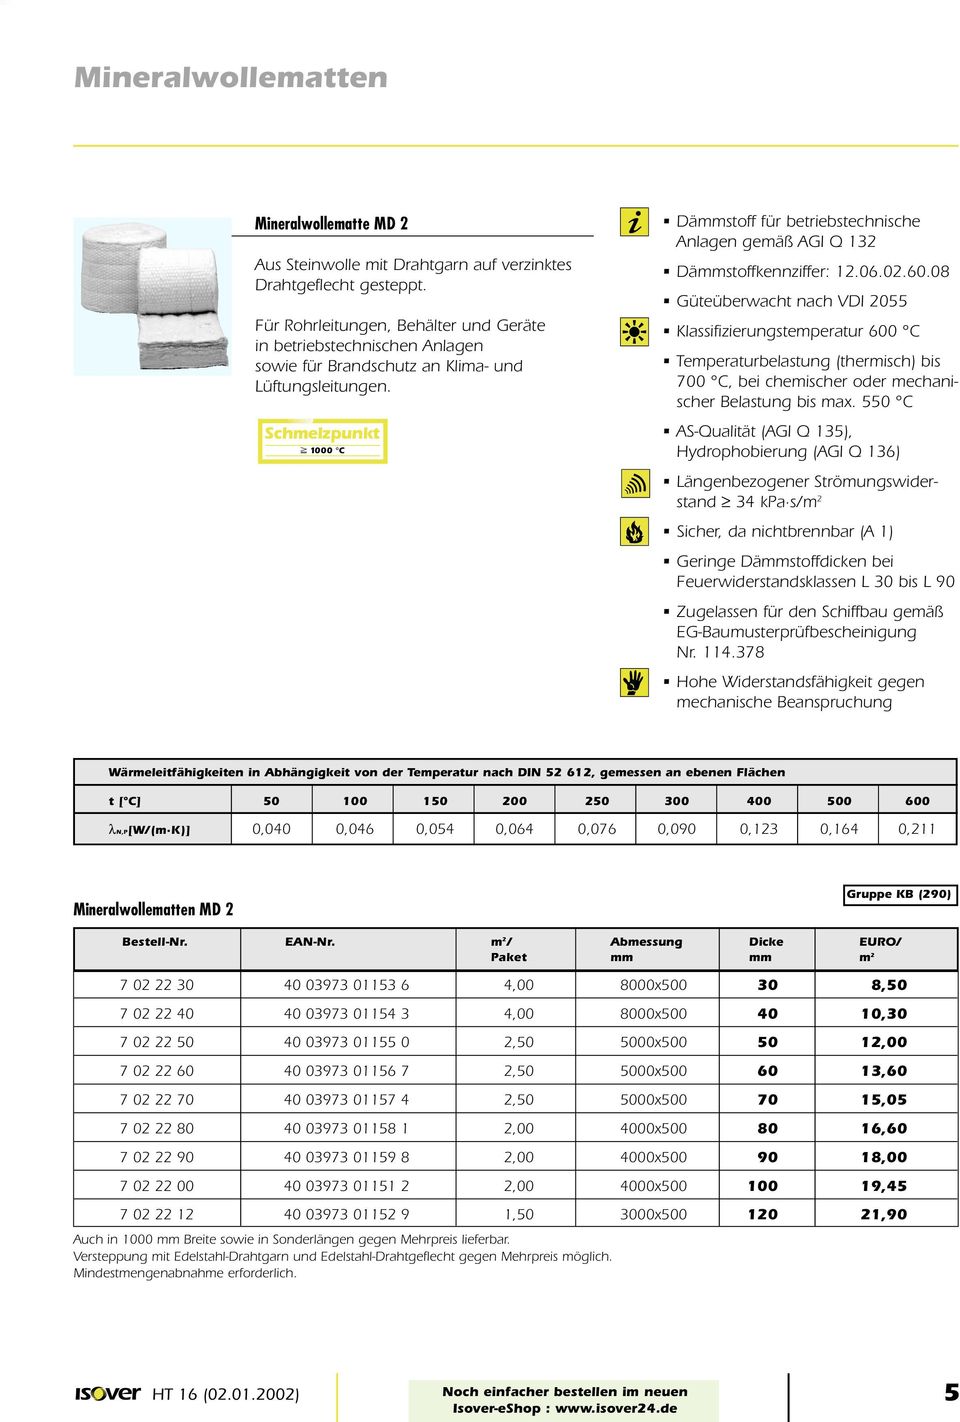 Schmelzpunkt p 1000 C Dämmstoff für betriebstechnische Anlagen gemäß AGI Q 132 Dämmstoffkennziffer: 12.06.02.60.